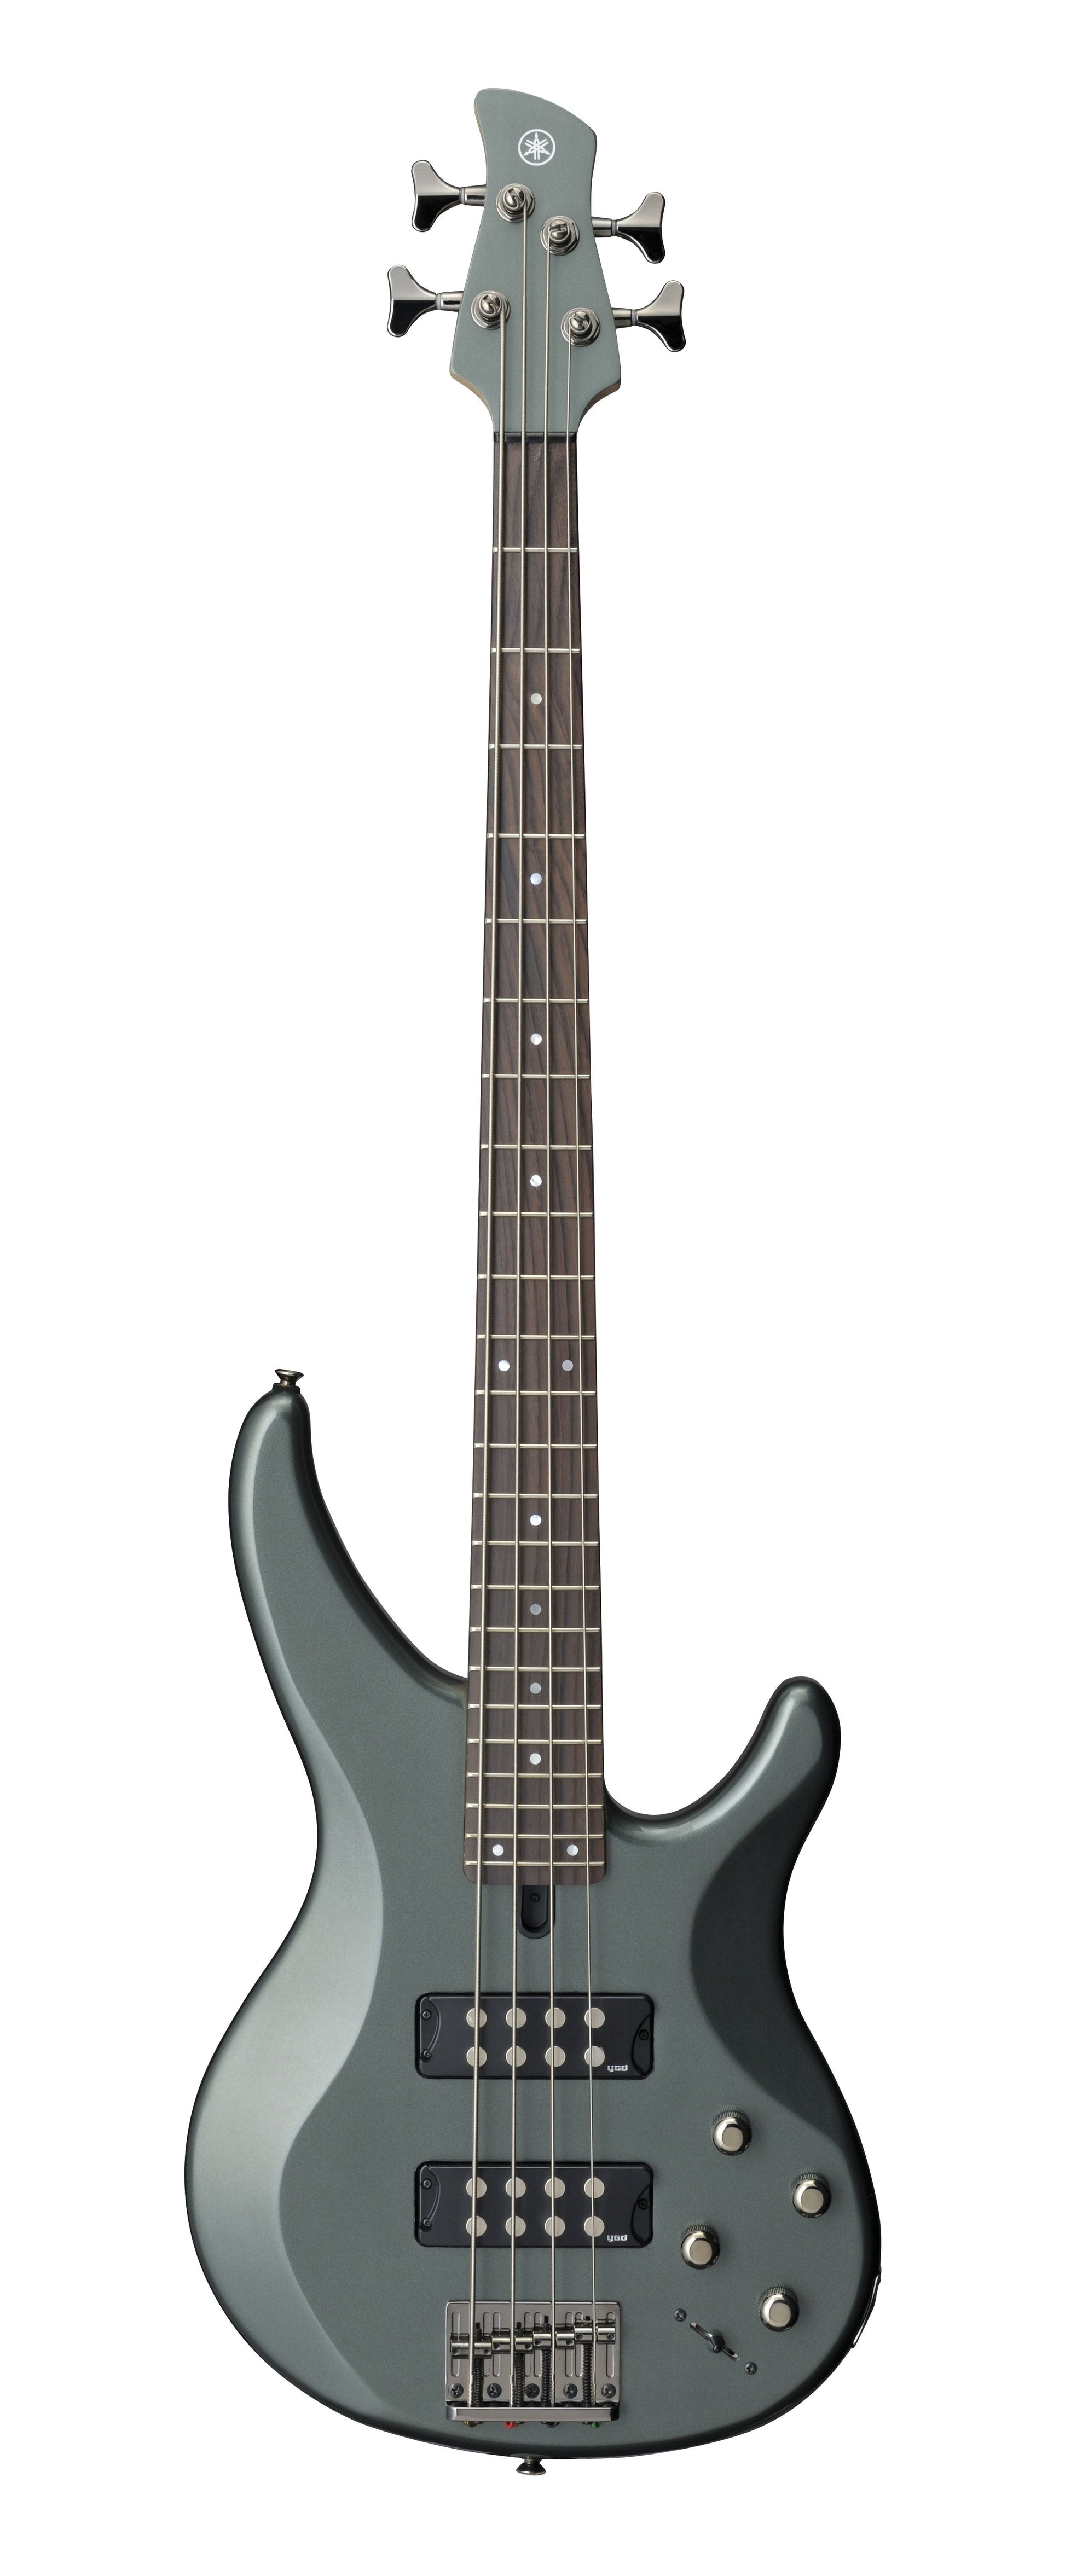 Yamaha TRBX304 Bass Guitar - Mist Green - Joondalup Music Centre